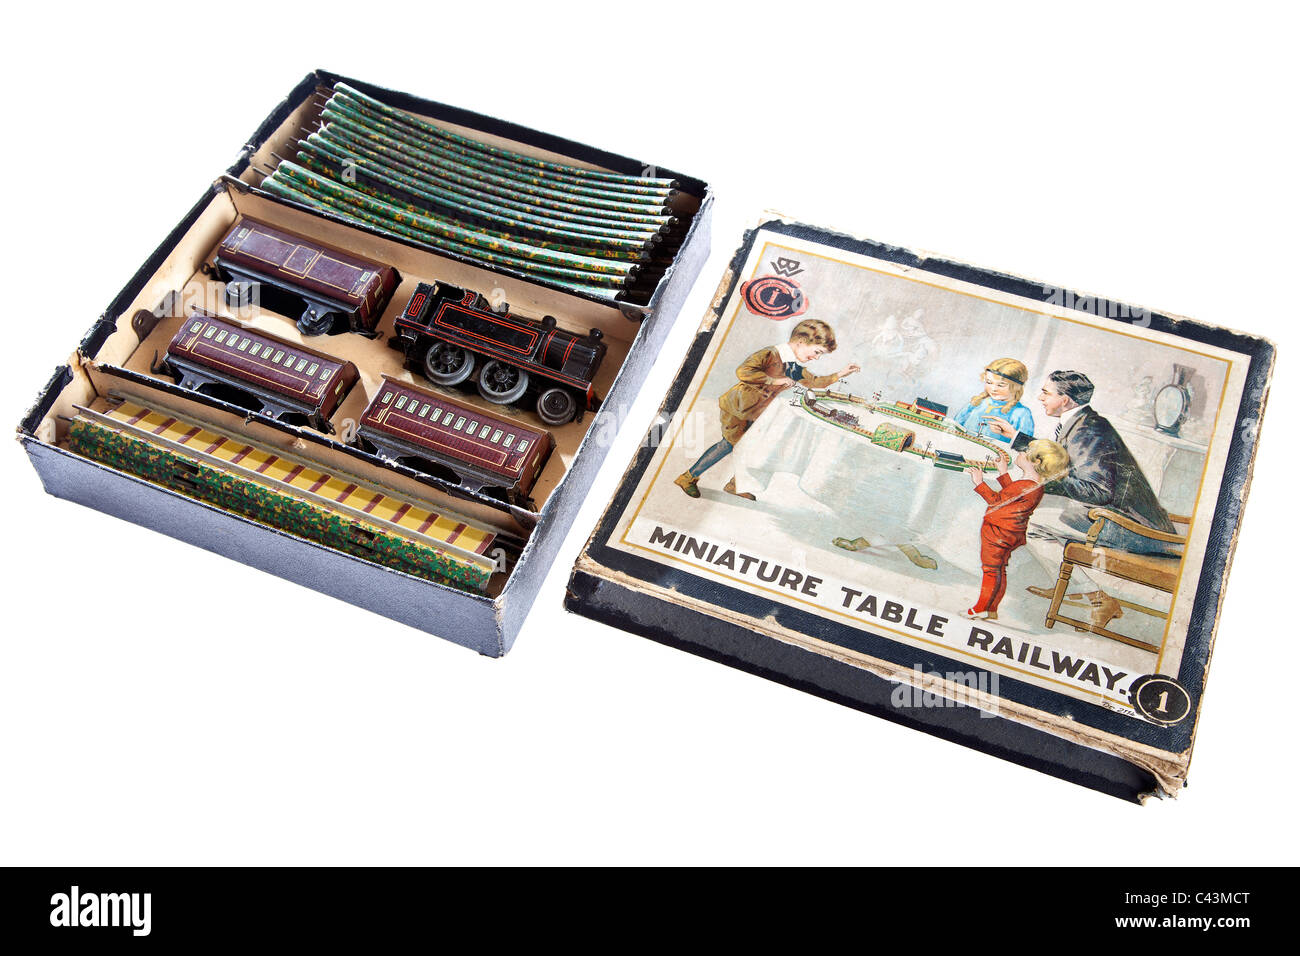 La precisione di un orologio di Bing vista tabella in miniatura Ferrovia è il primo al mondo 00 gauge toy train set introdotto nel 1922 JMH4941 Foto Stock